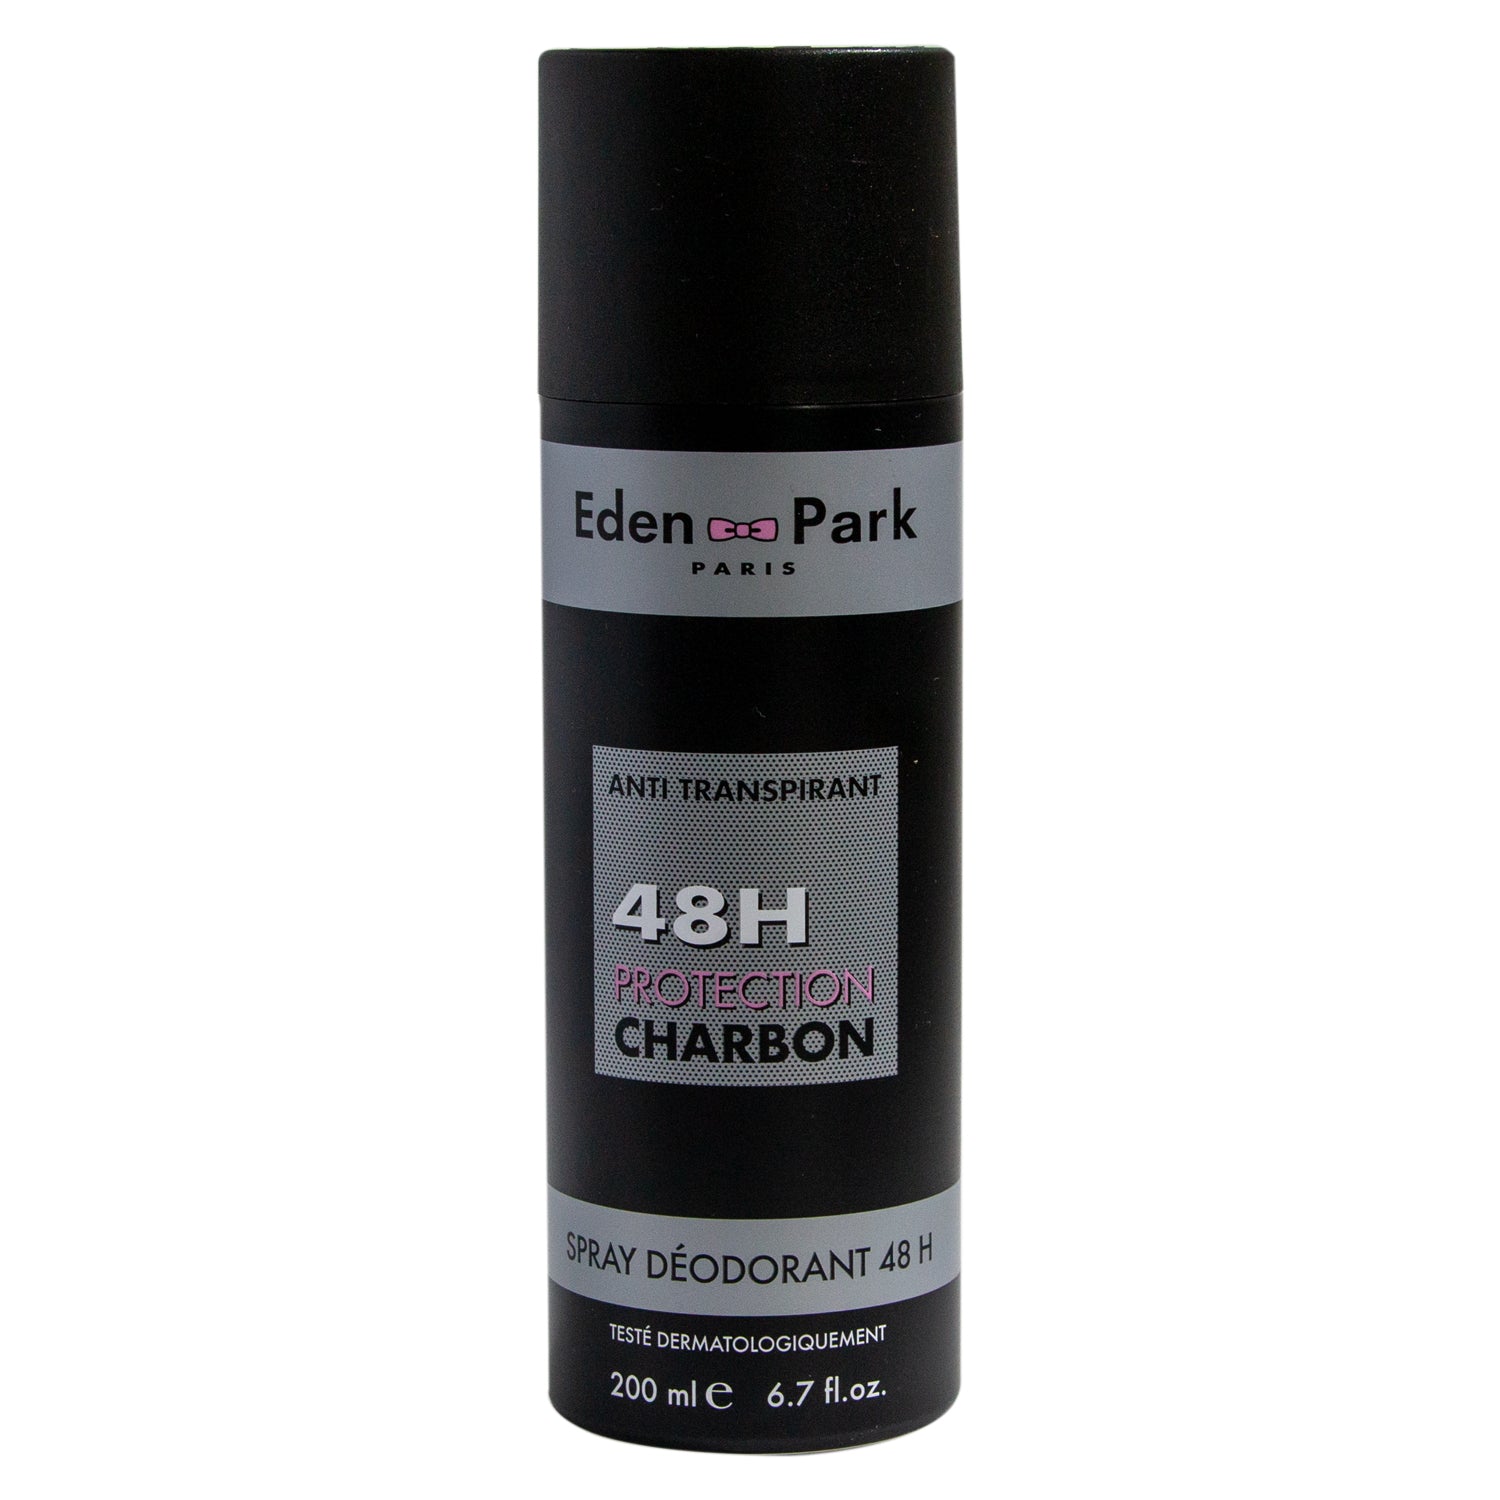 Eden & Park 48H Protection Charbon Deo For Men 200ml